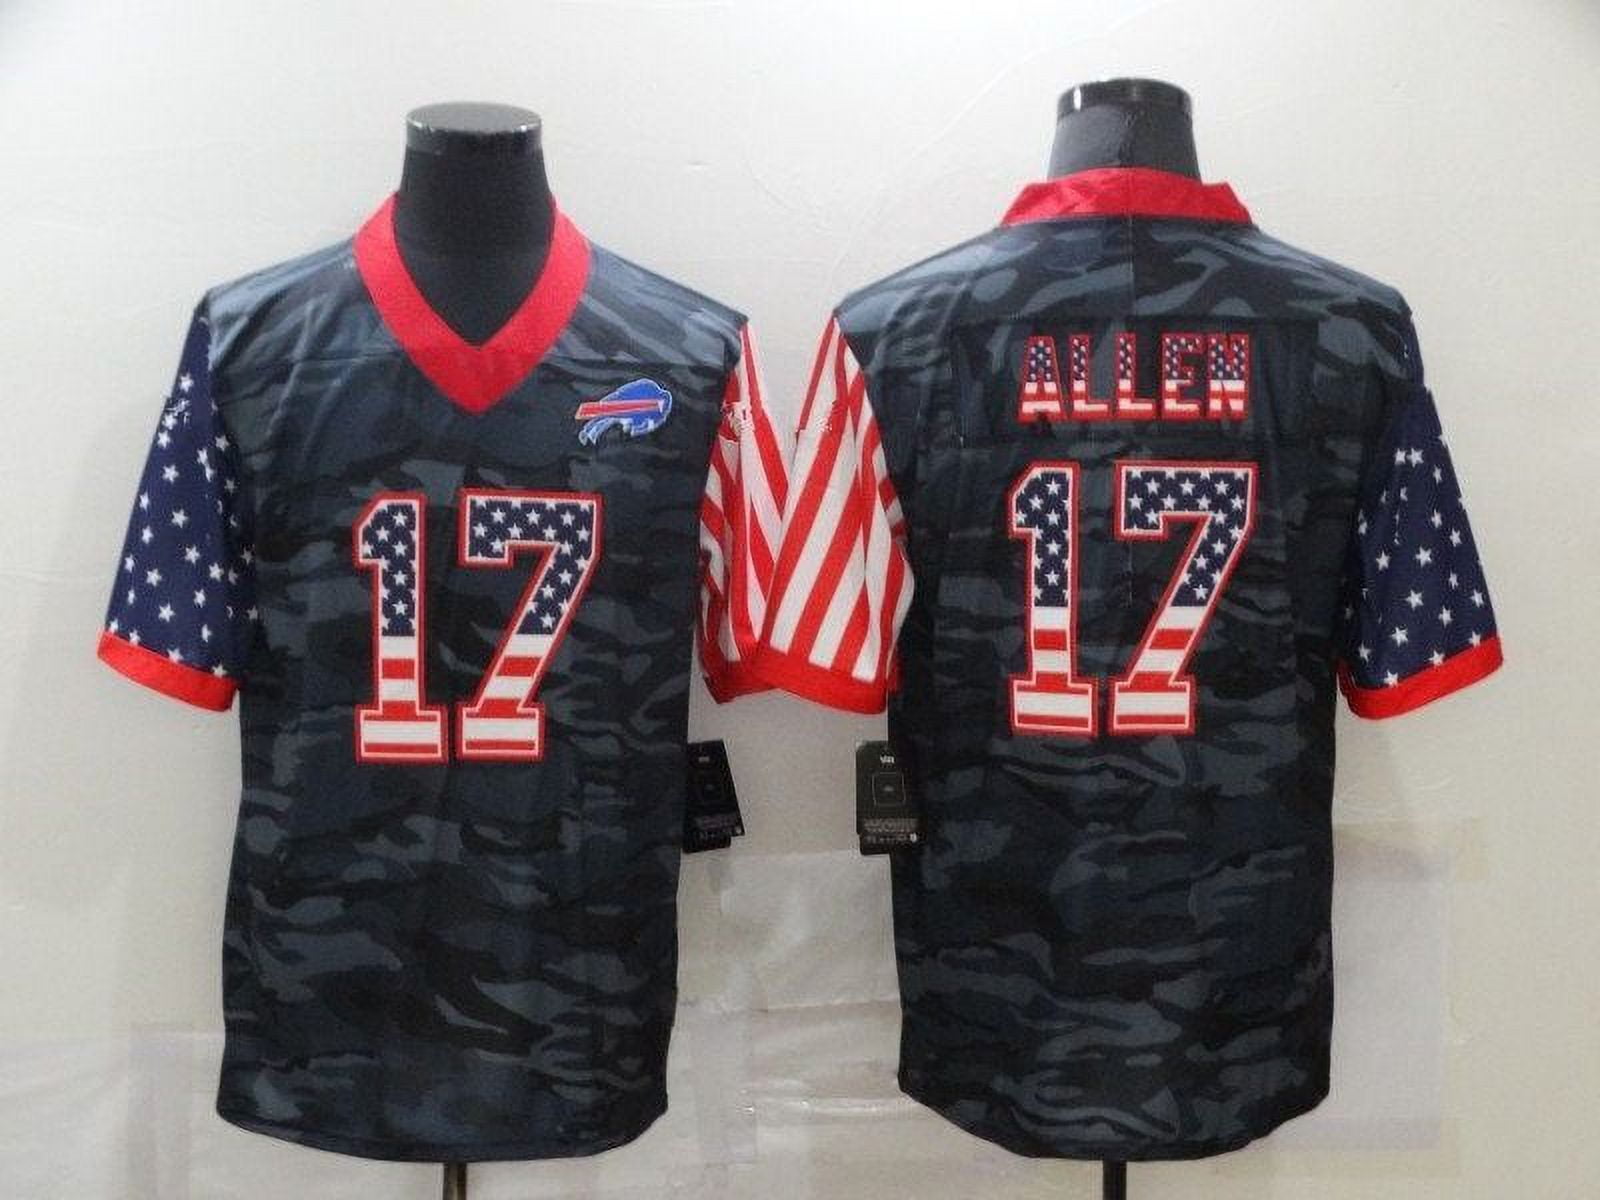 Josh Allen Buffalo Bills Limited Stitched Pro Jersey - White